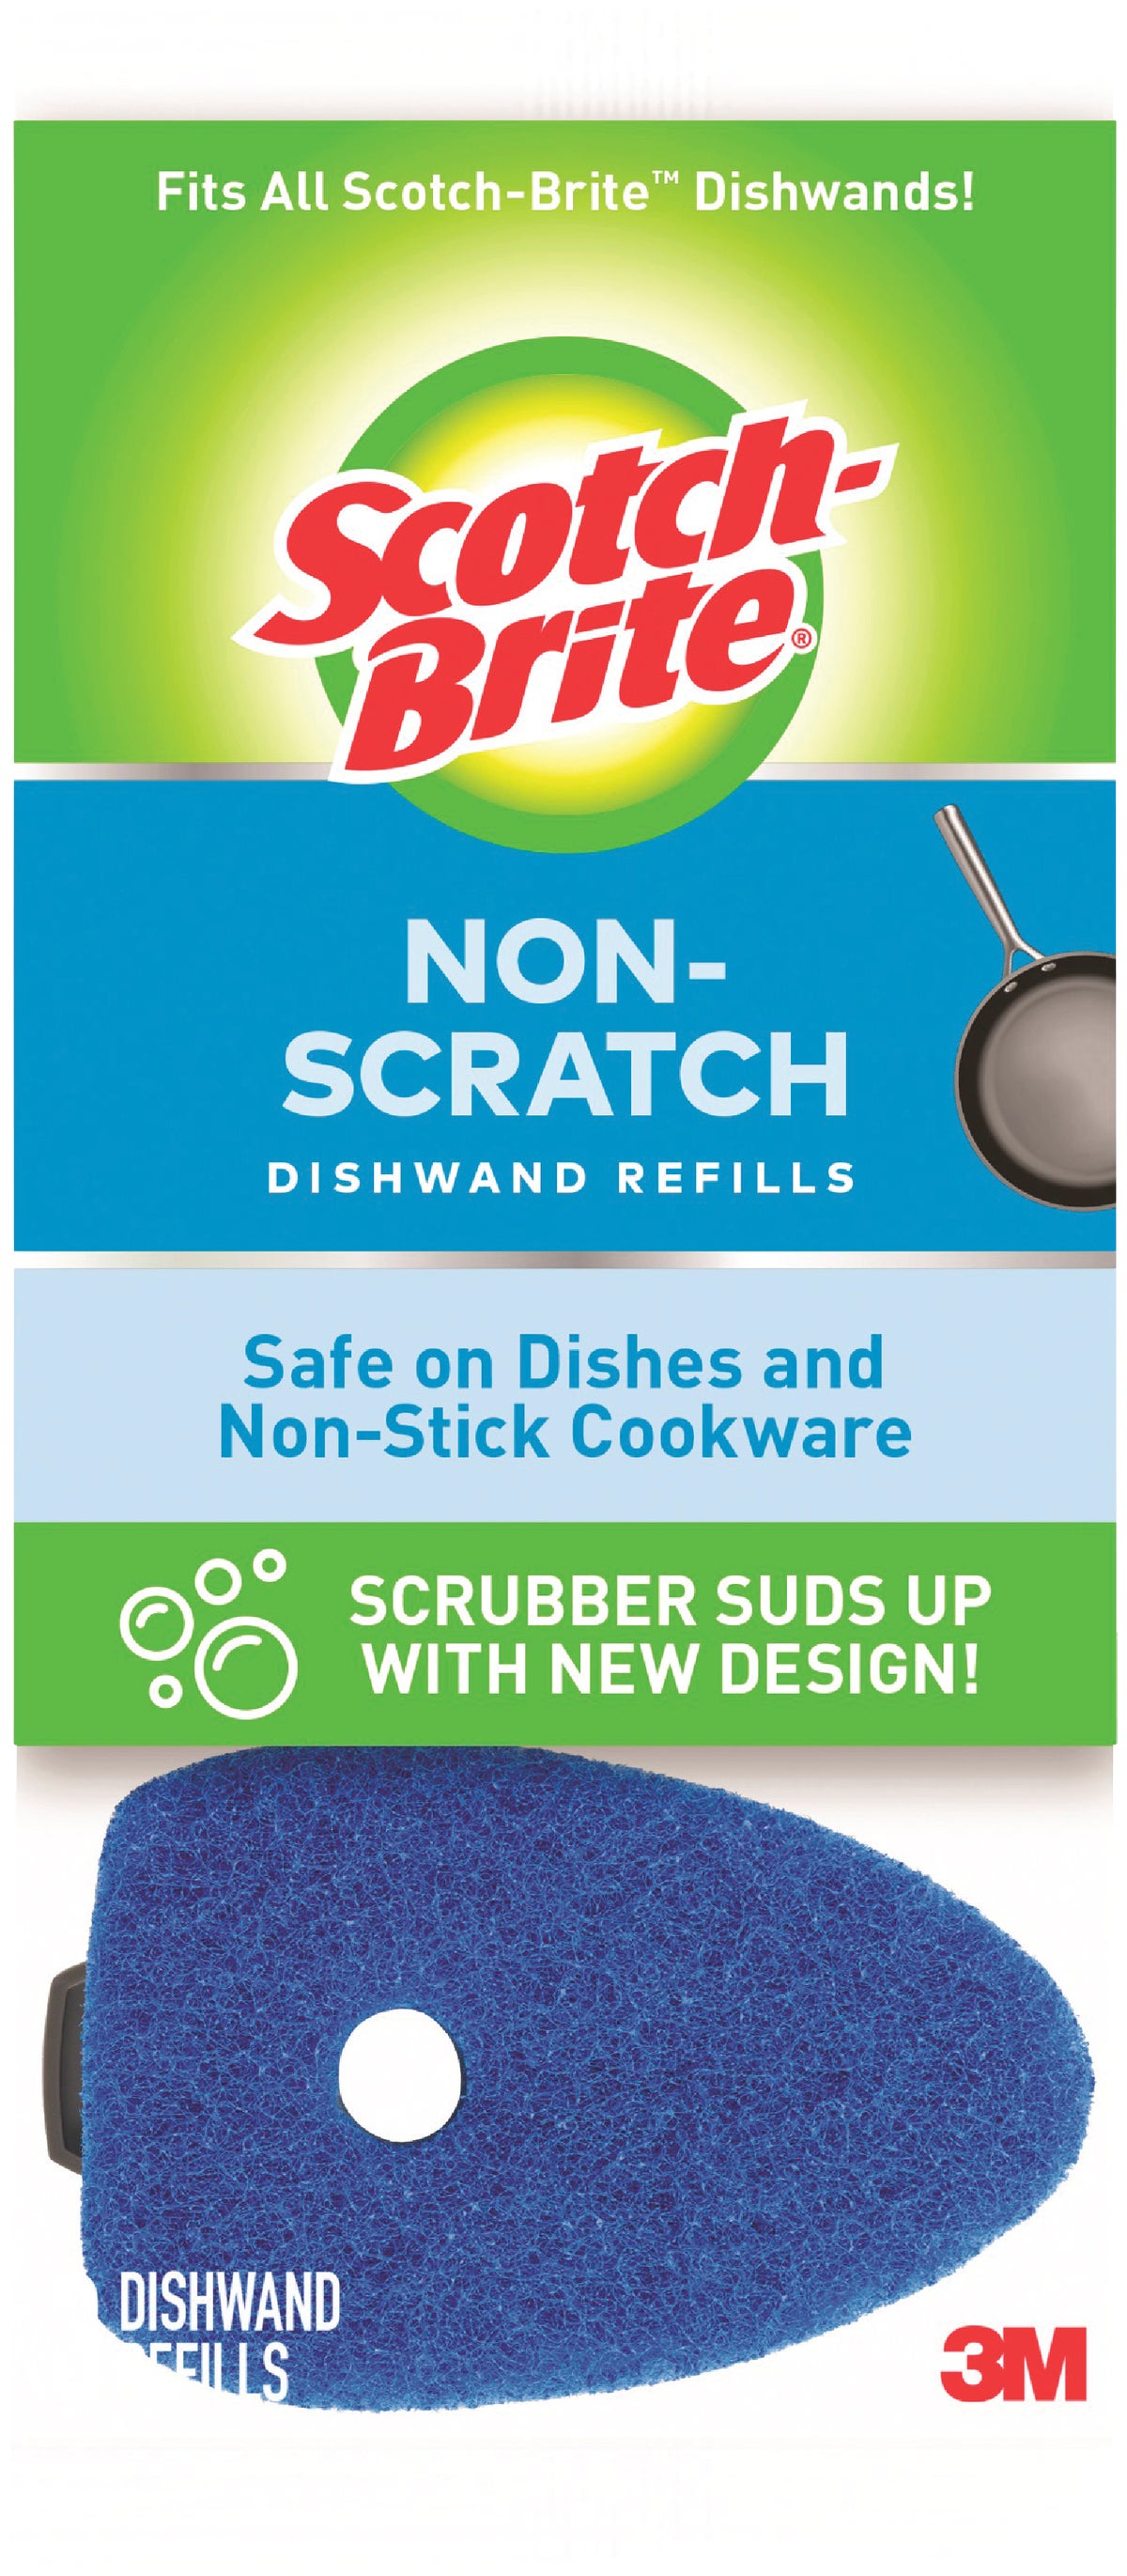 Scotch-Brite™ Non-Scratch Tub & Tile Scrubber Refill